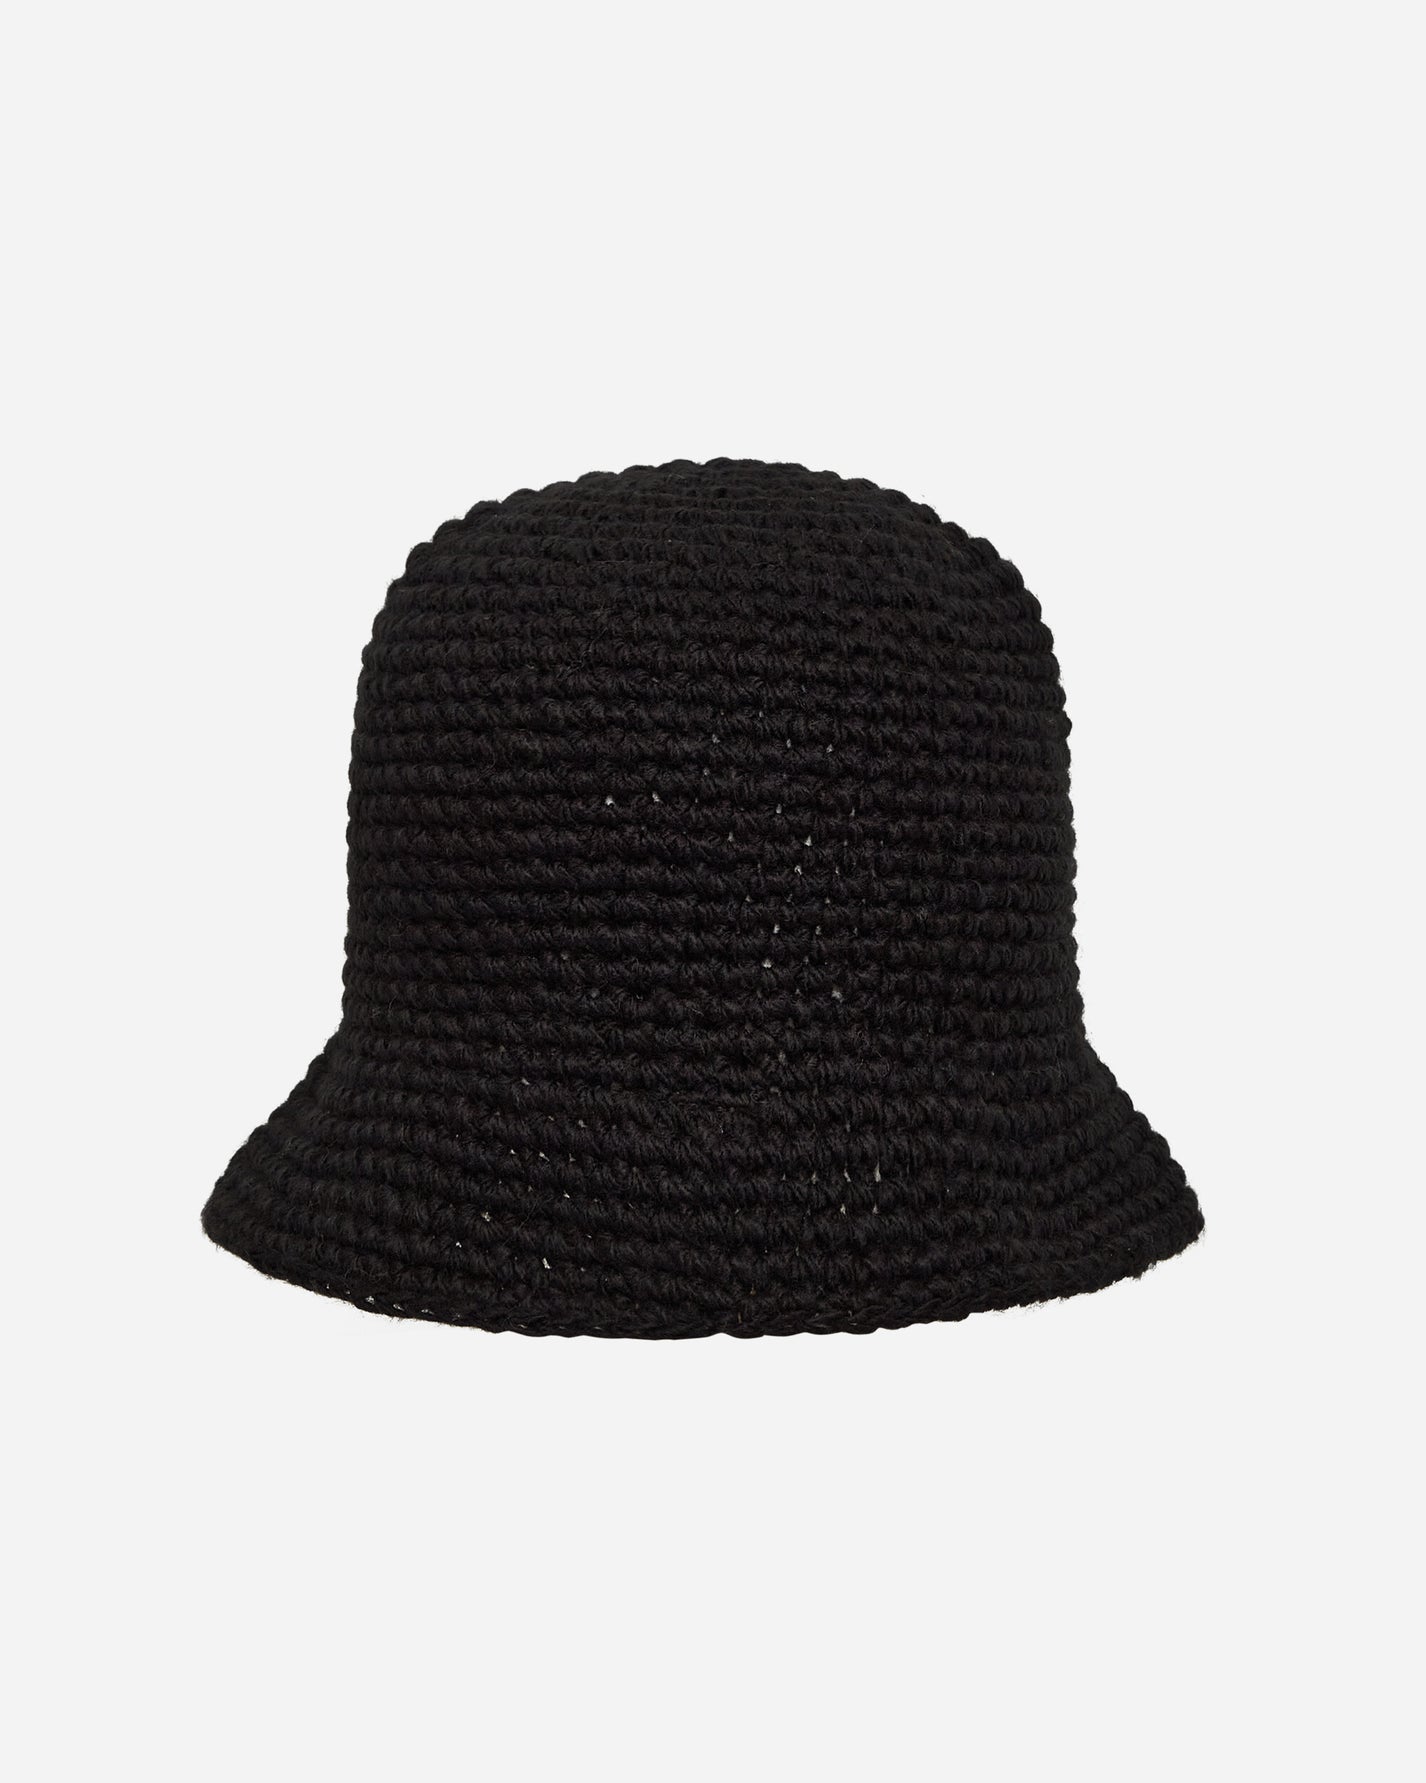 Stüssy Swirly S Knit Bucket Hat Black Hats Bucket 1321208 0001